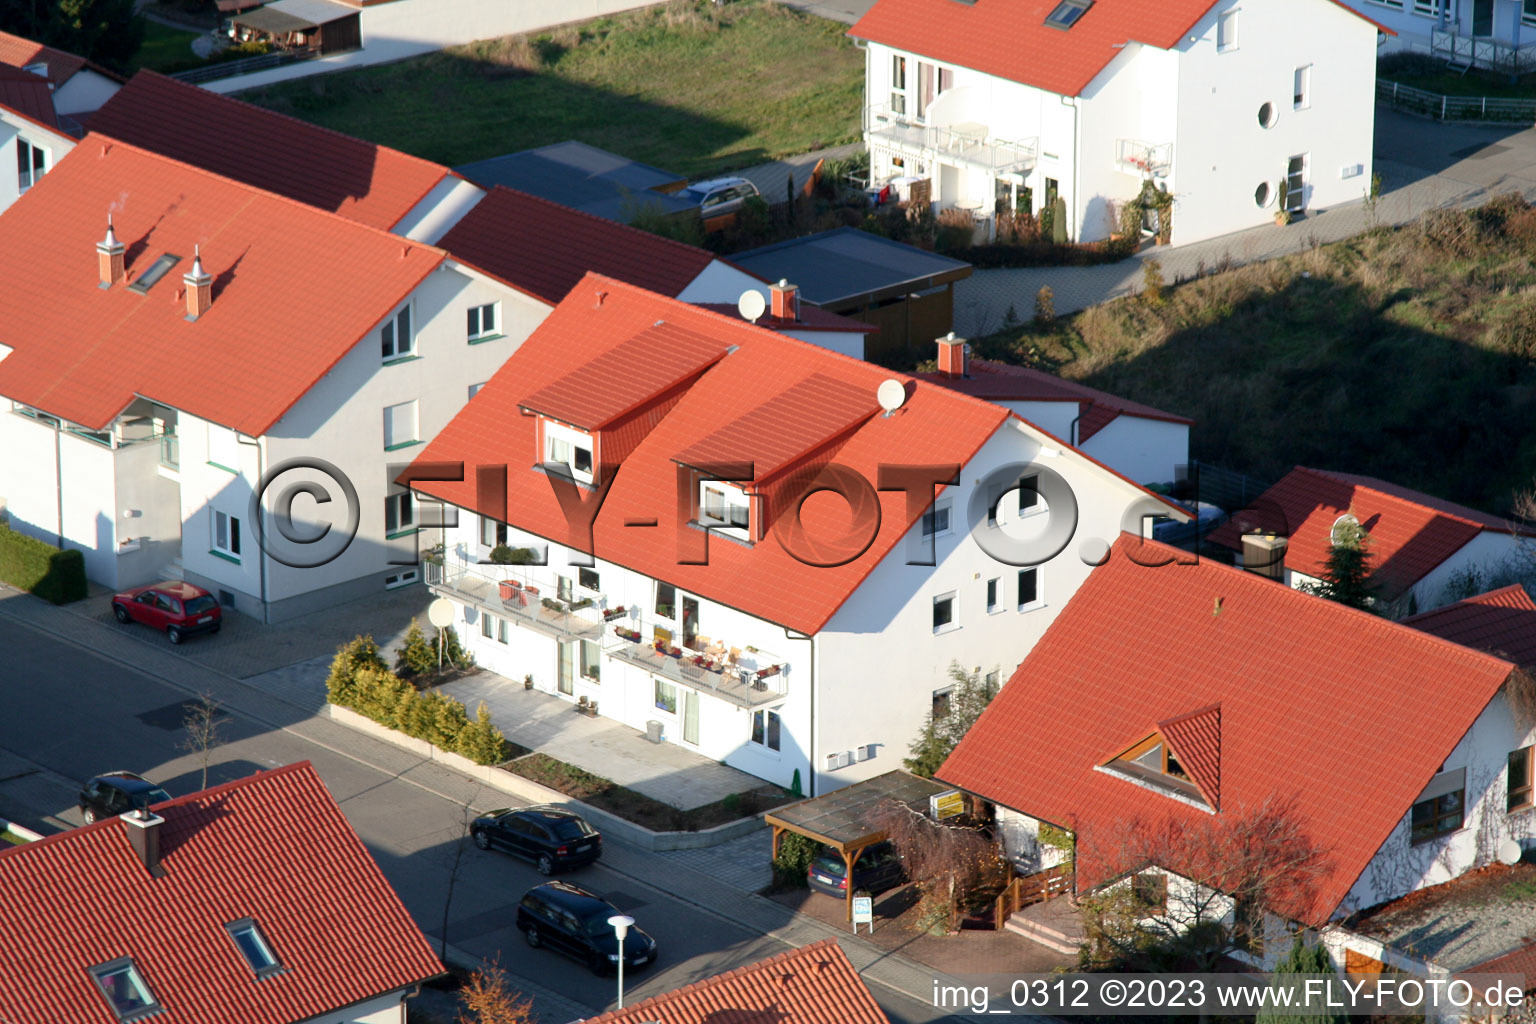 Rheinzabern Neubaugebiet An den Tongruben im Bundesland Rheinland-Pfalz, Deutschland aus der Luft betrachtet